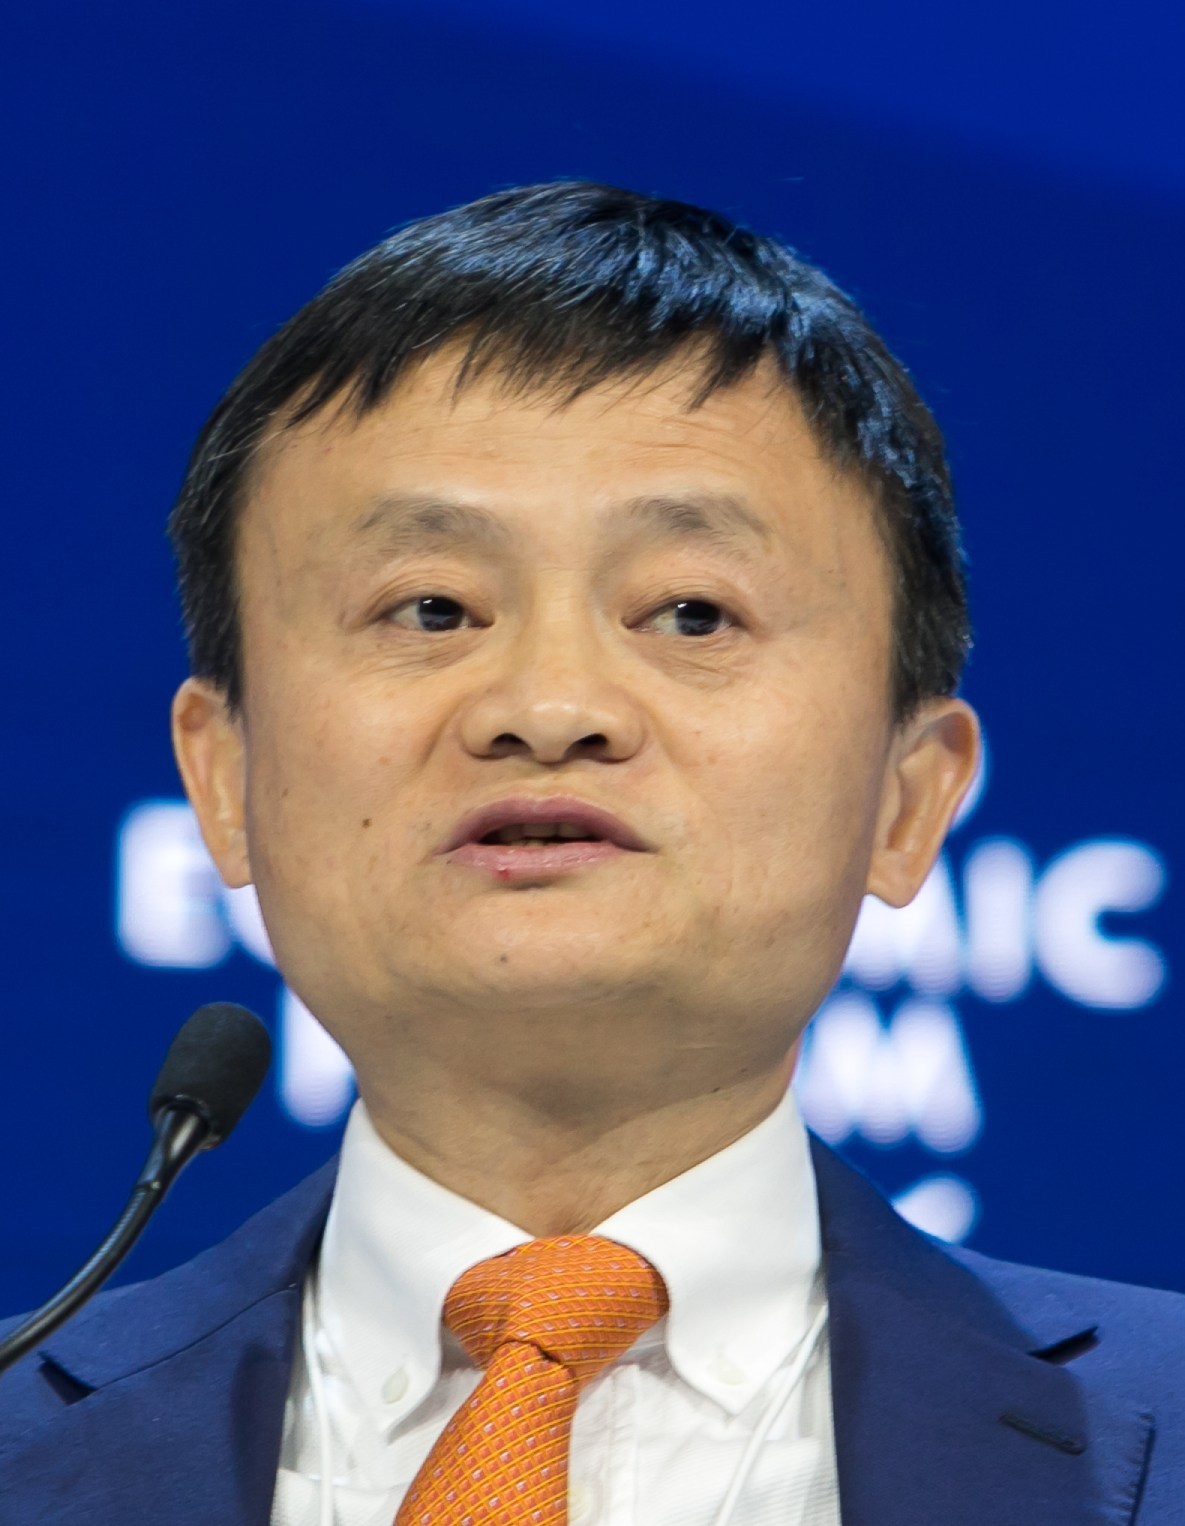 Jack Ma ‘desaparece’ después de un conflicto con el gobierno chino